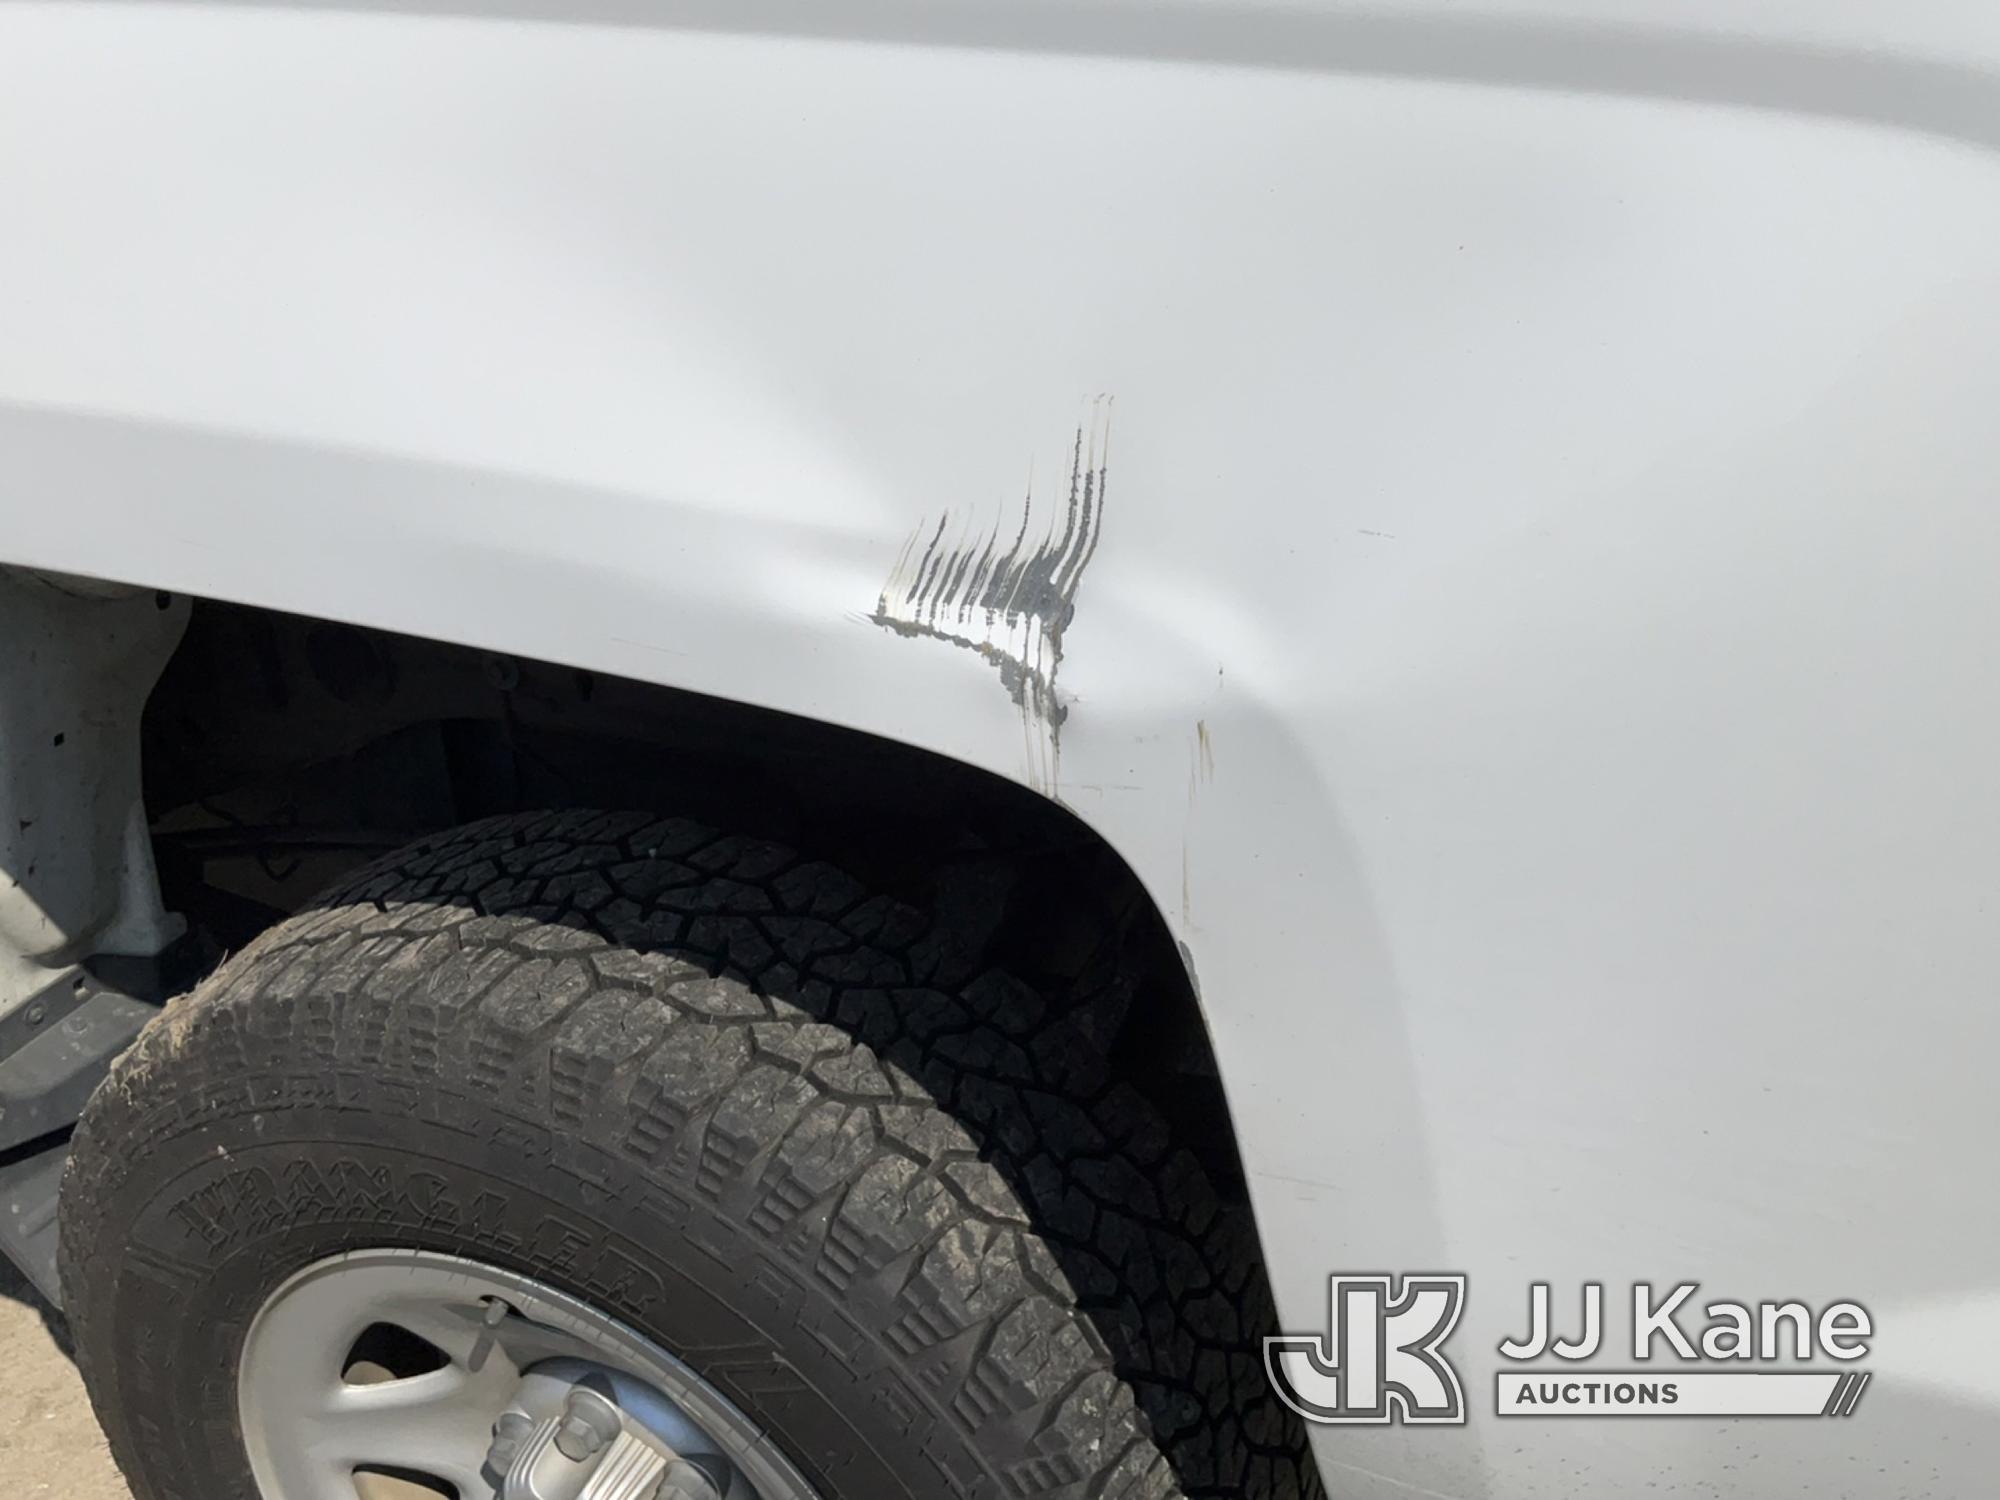 (Bellport, NY) 2017 Chevrolet Silverado 1500 4x4 Extended-Cab Pickup Truck Runs & Moves) (Body Damag